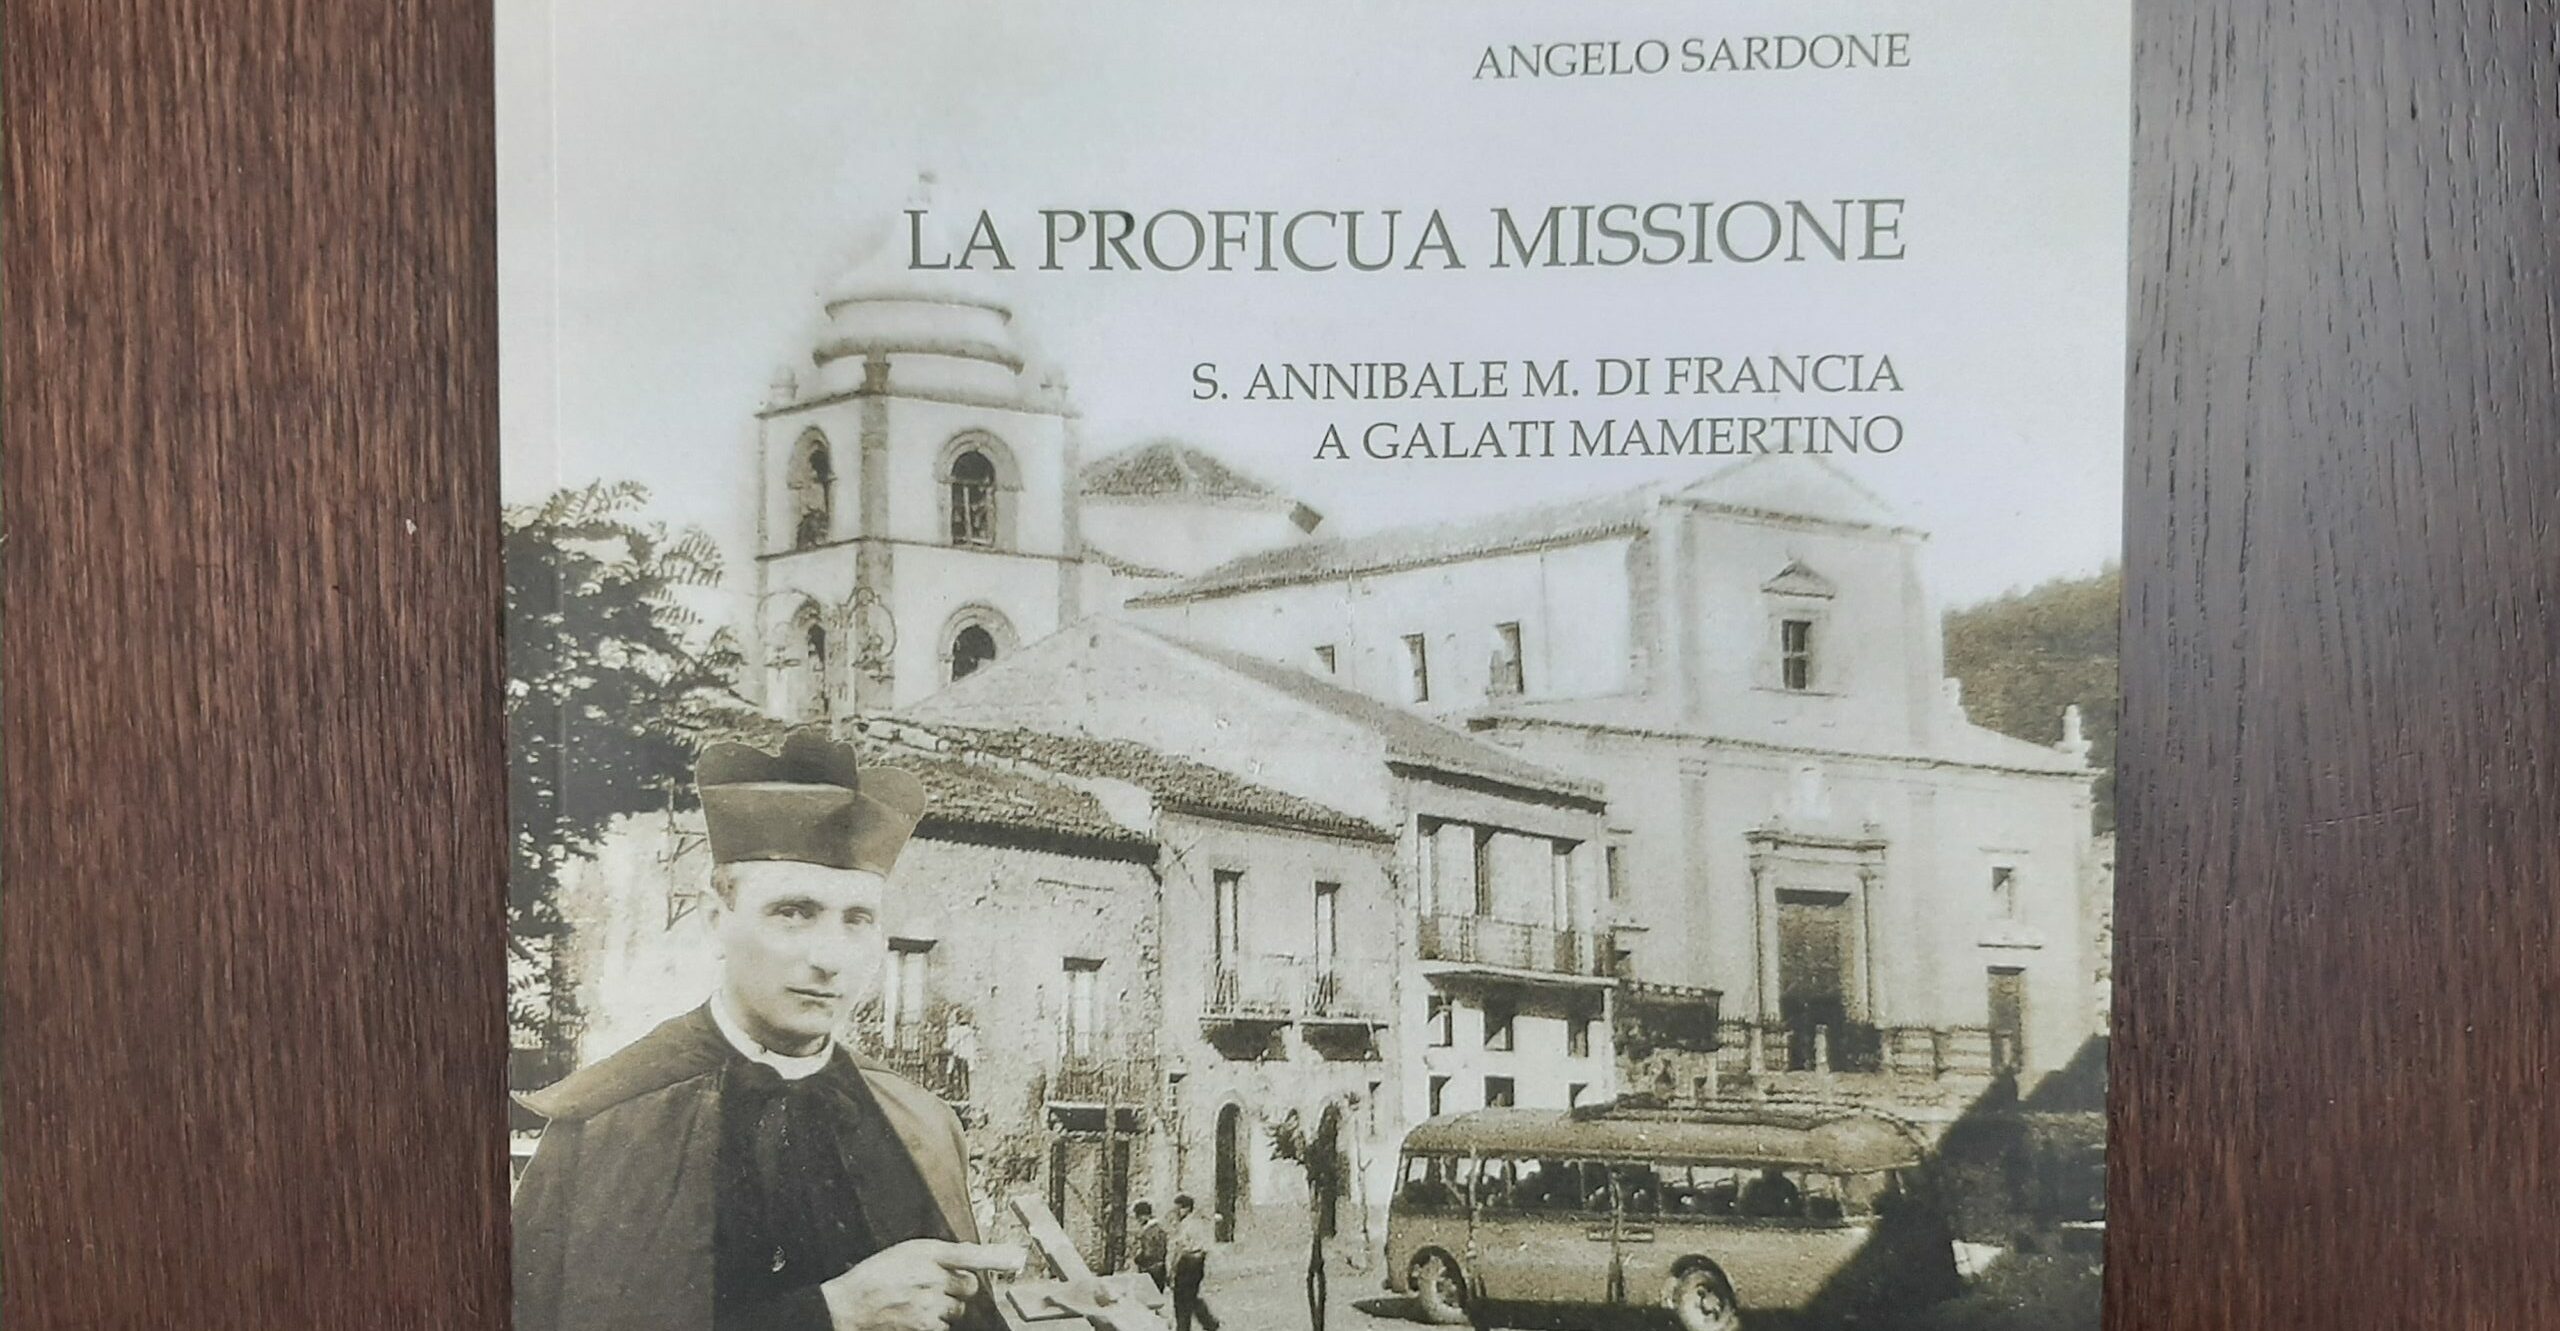 “La proficua missione. S. Annibale M. Di Francia a Galati Mamertino”, il volume del Padre Rogazionista Angelo Sardone